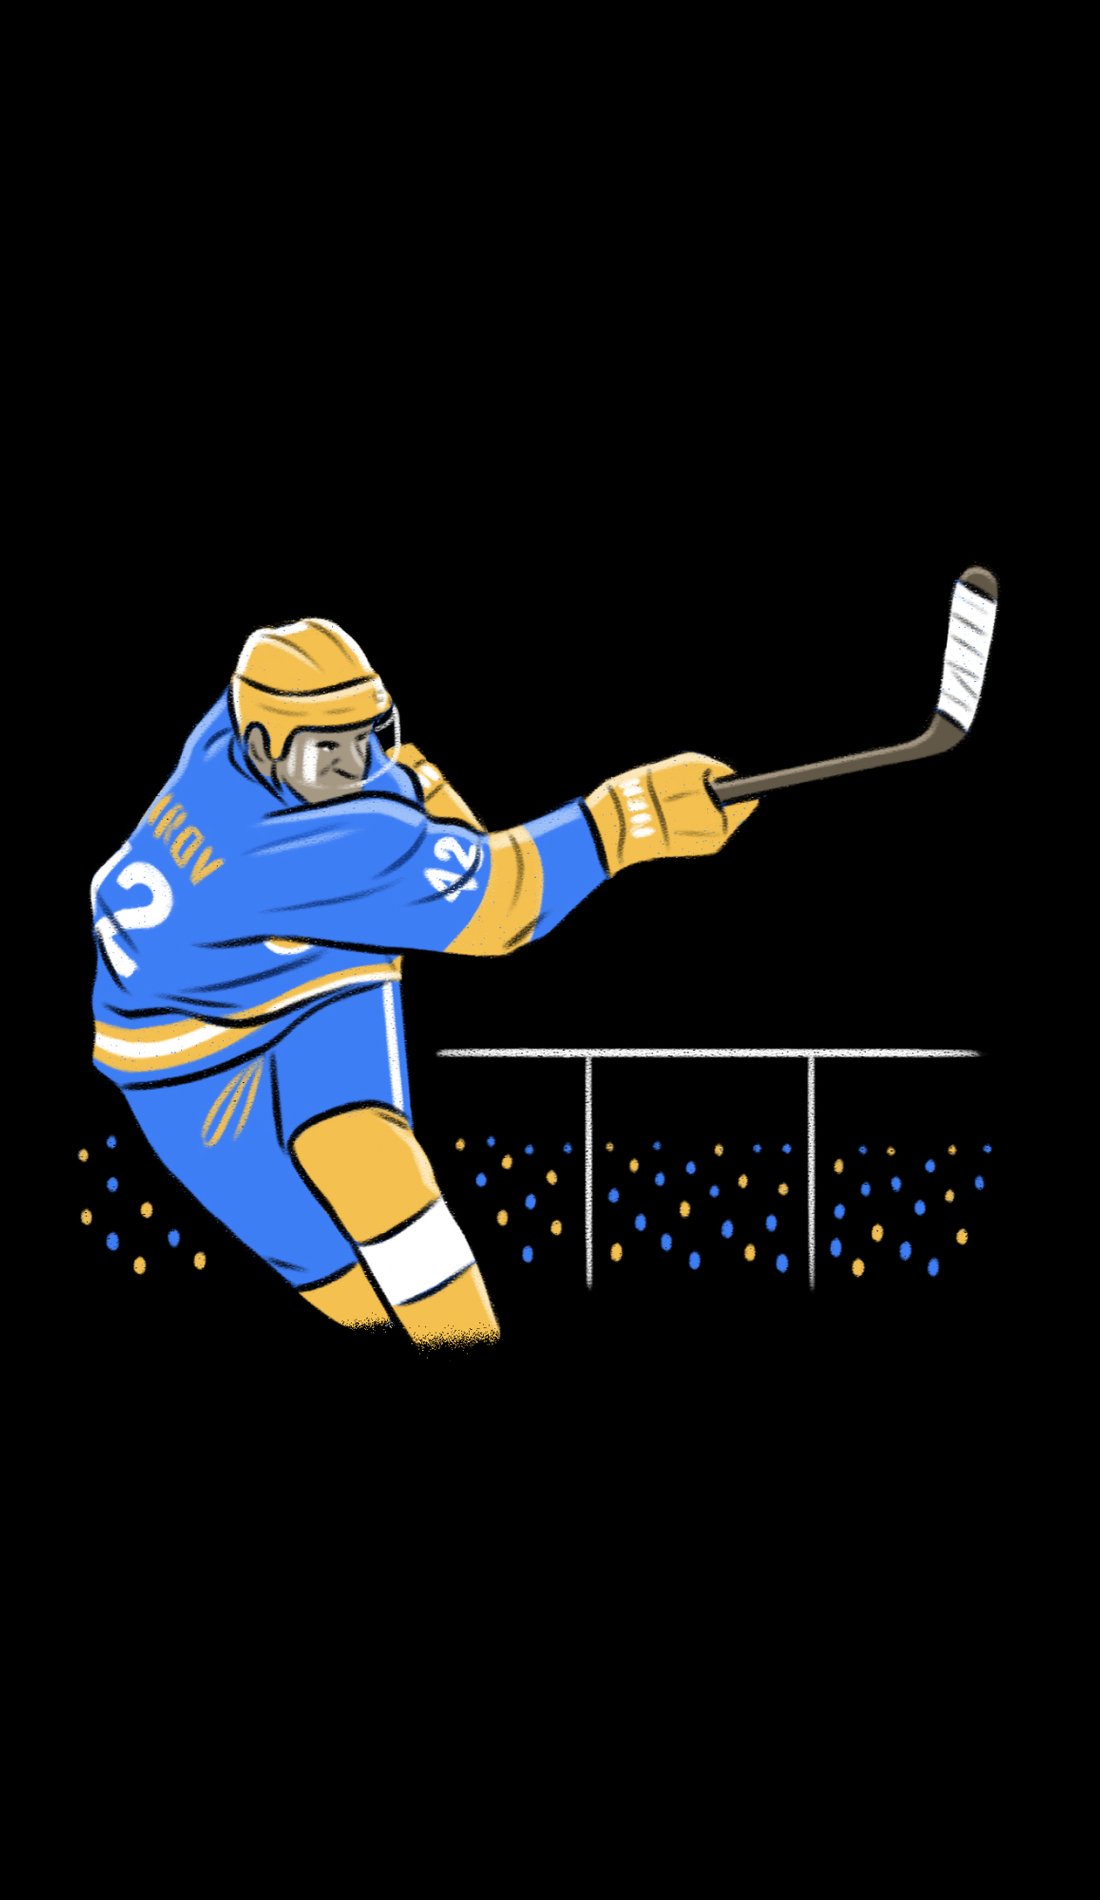 A Alberta Golden Bears Hockey live event